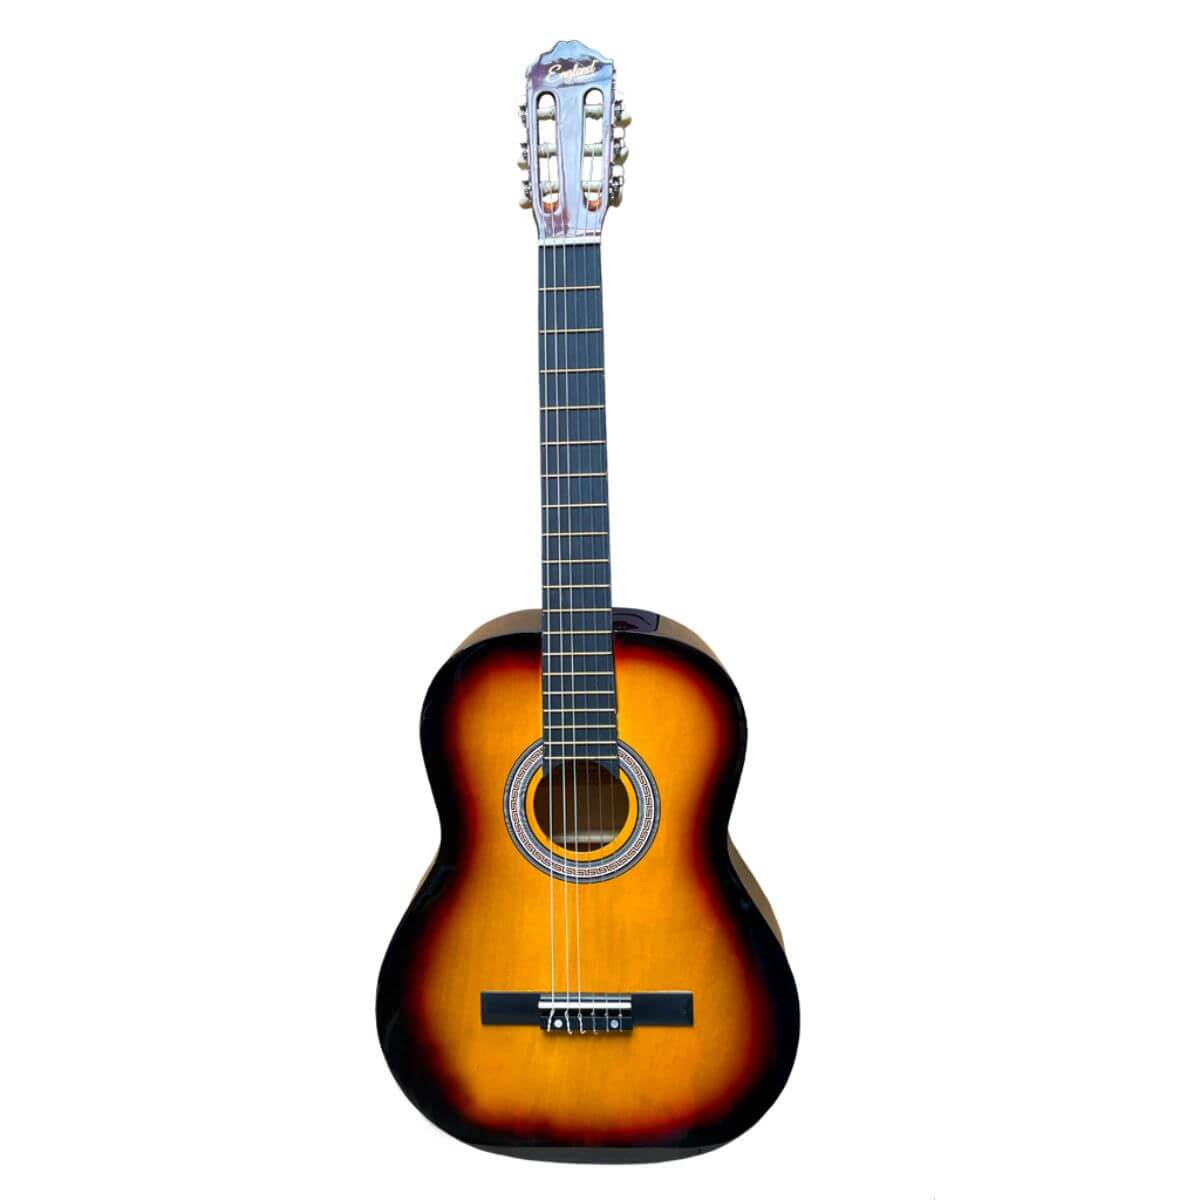 Guitarra clásica escala 39 pulg., color sunburst, incluye  funda, un juego de cuerdas de repuesto, capo traste, afinador, correa, vitela y enrollador de cuerdas